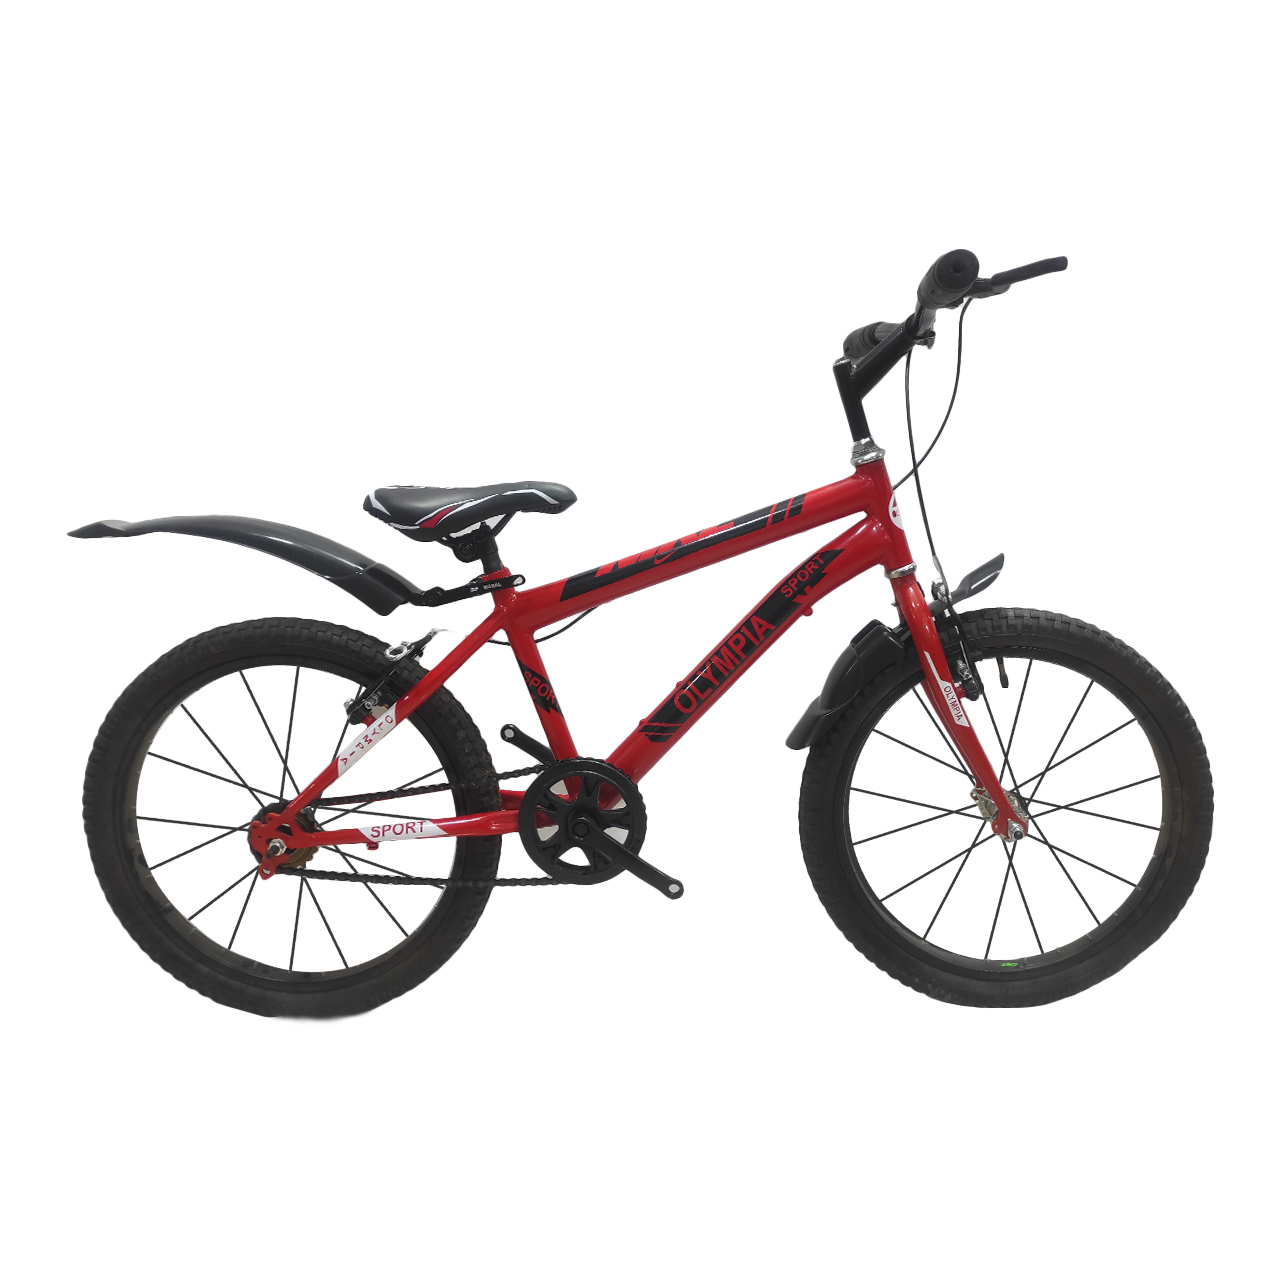 نکته خرید - قیمت روز دوچرخه کوهستان المپیا مدل 0090 سایز 20 خرید